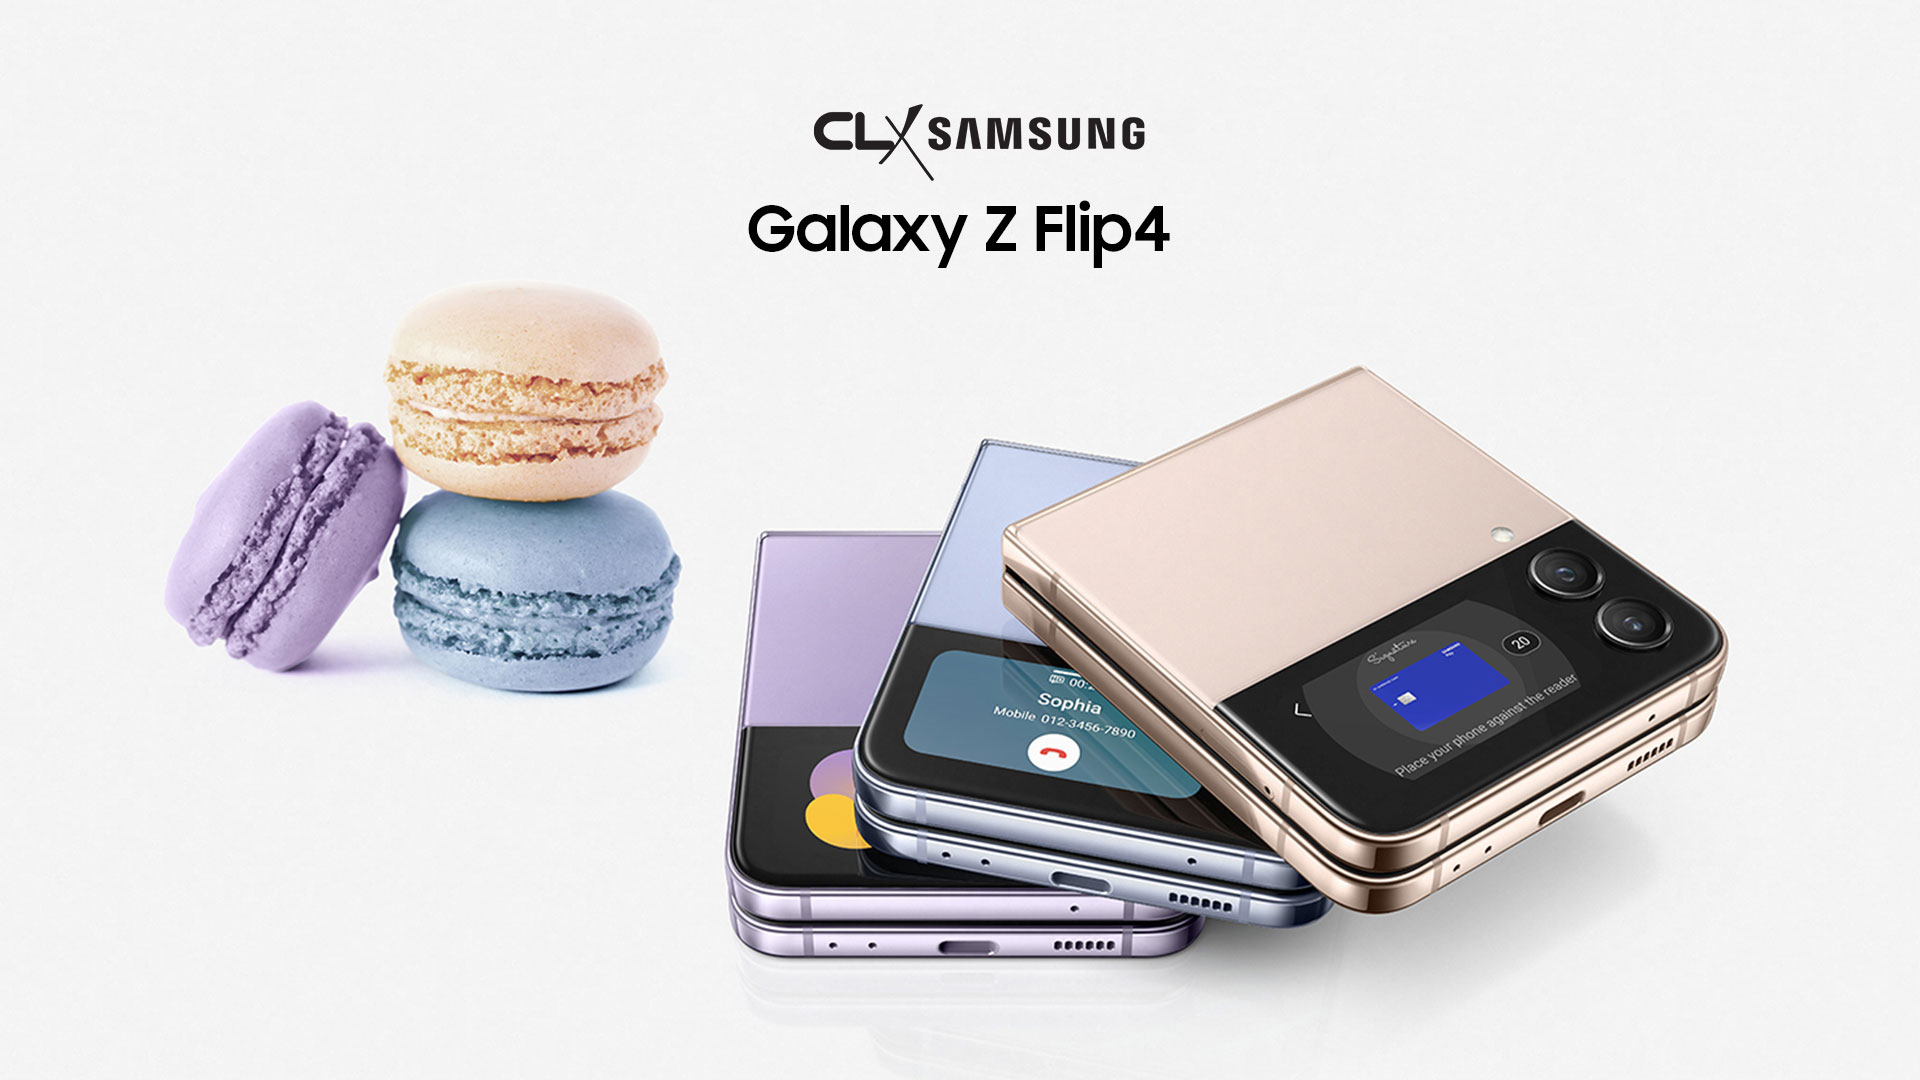 Galaxy Z Fold4 y Z Flip4 - Smartphones Plegables - Nasar Ramadan Dagga - Presidente de CLX - CEO de CLX Samsung